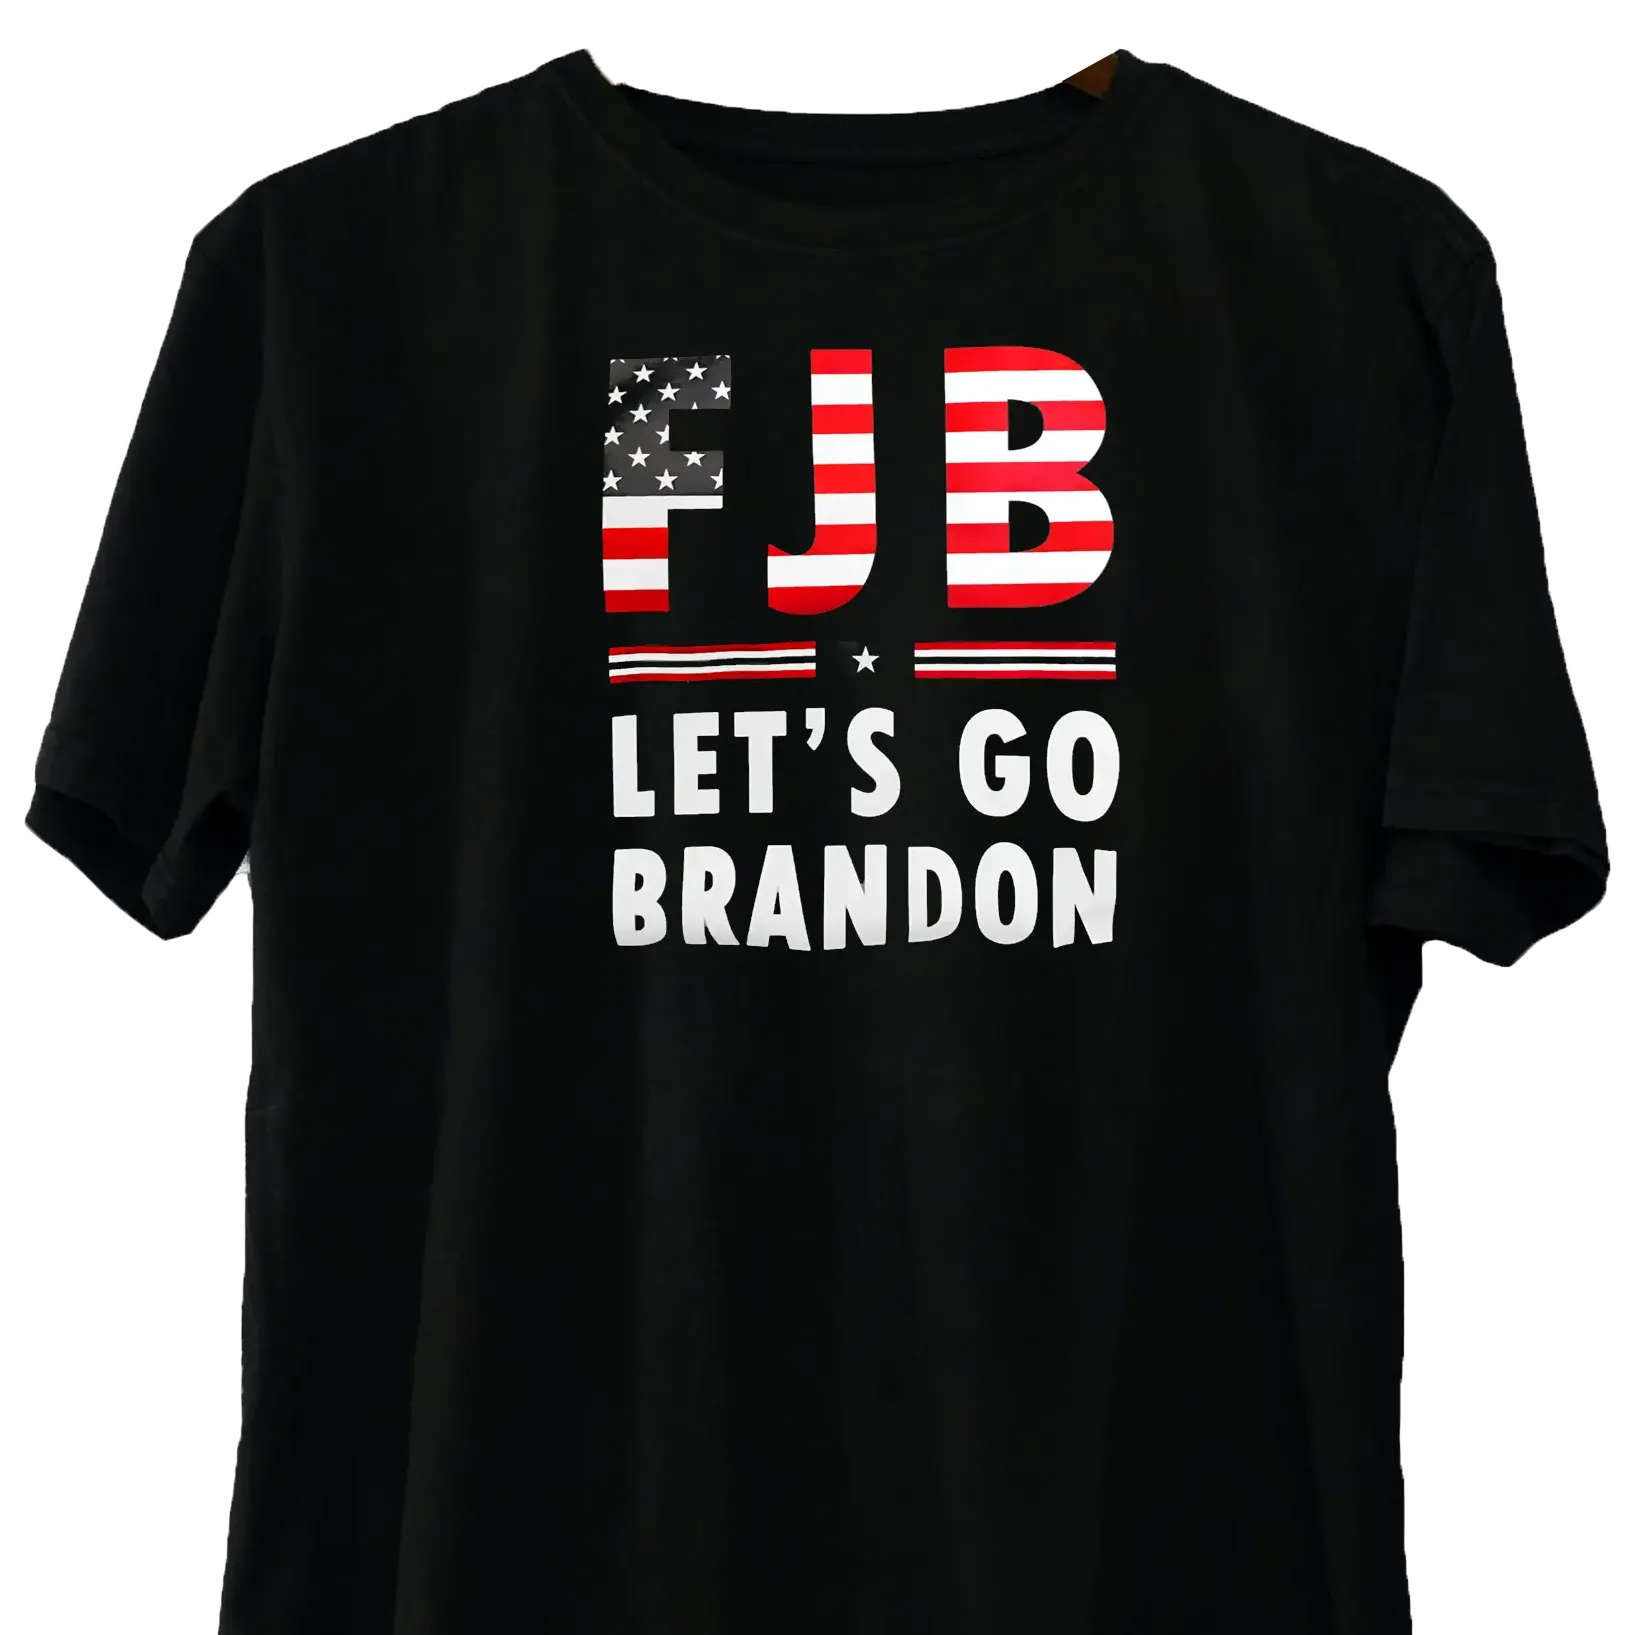 https://annabellesstudio.com/wp-content/uploads/2022/01/AB-Lets-Go-Brandon-FJB-short-sleeve-tee-black-2.webp